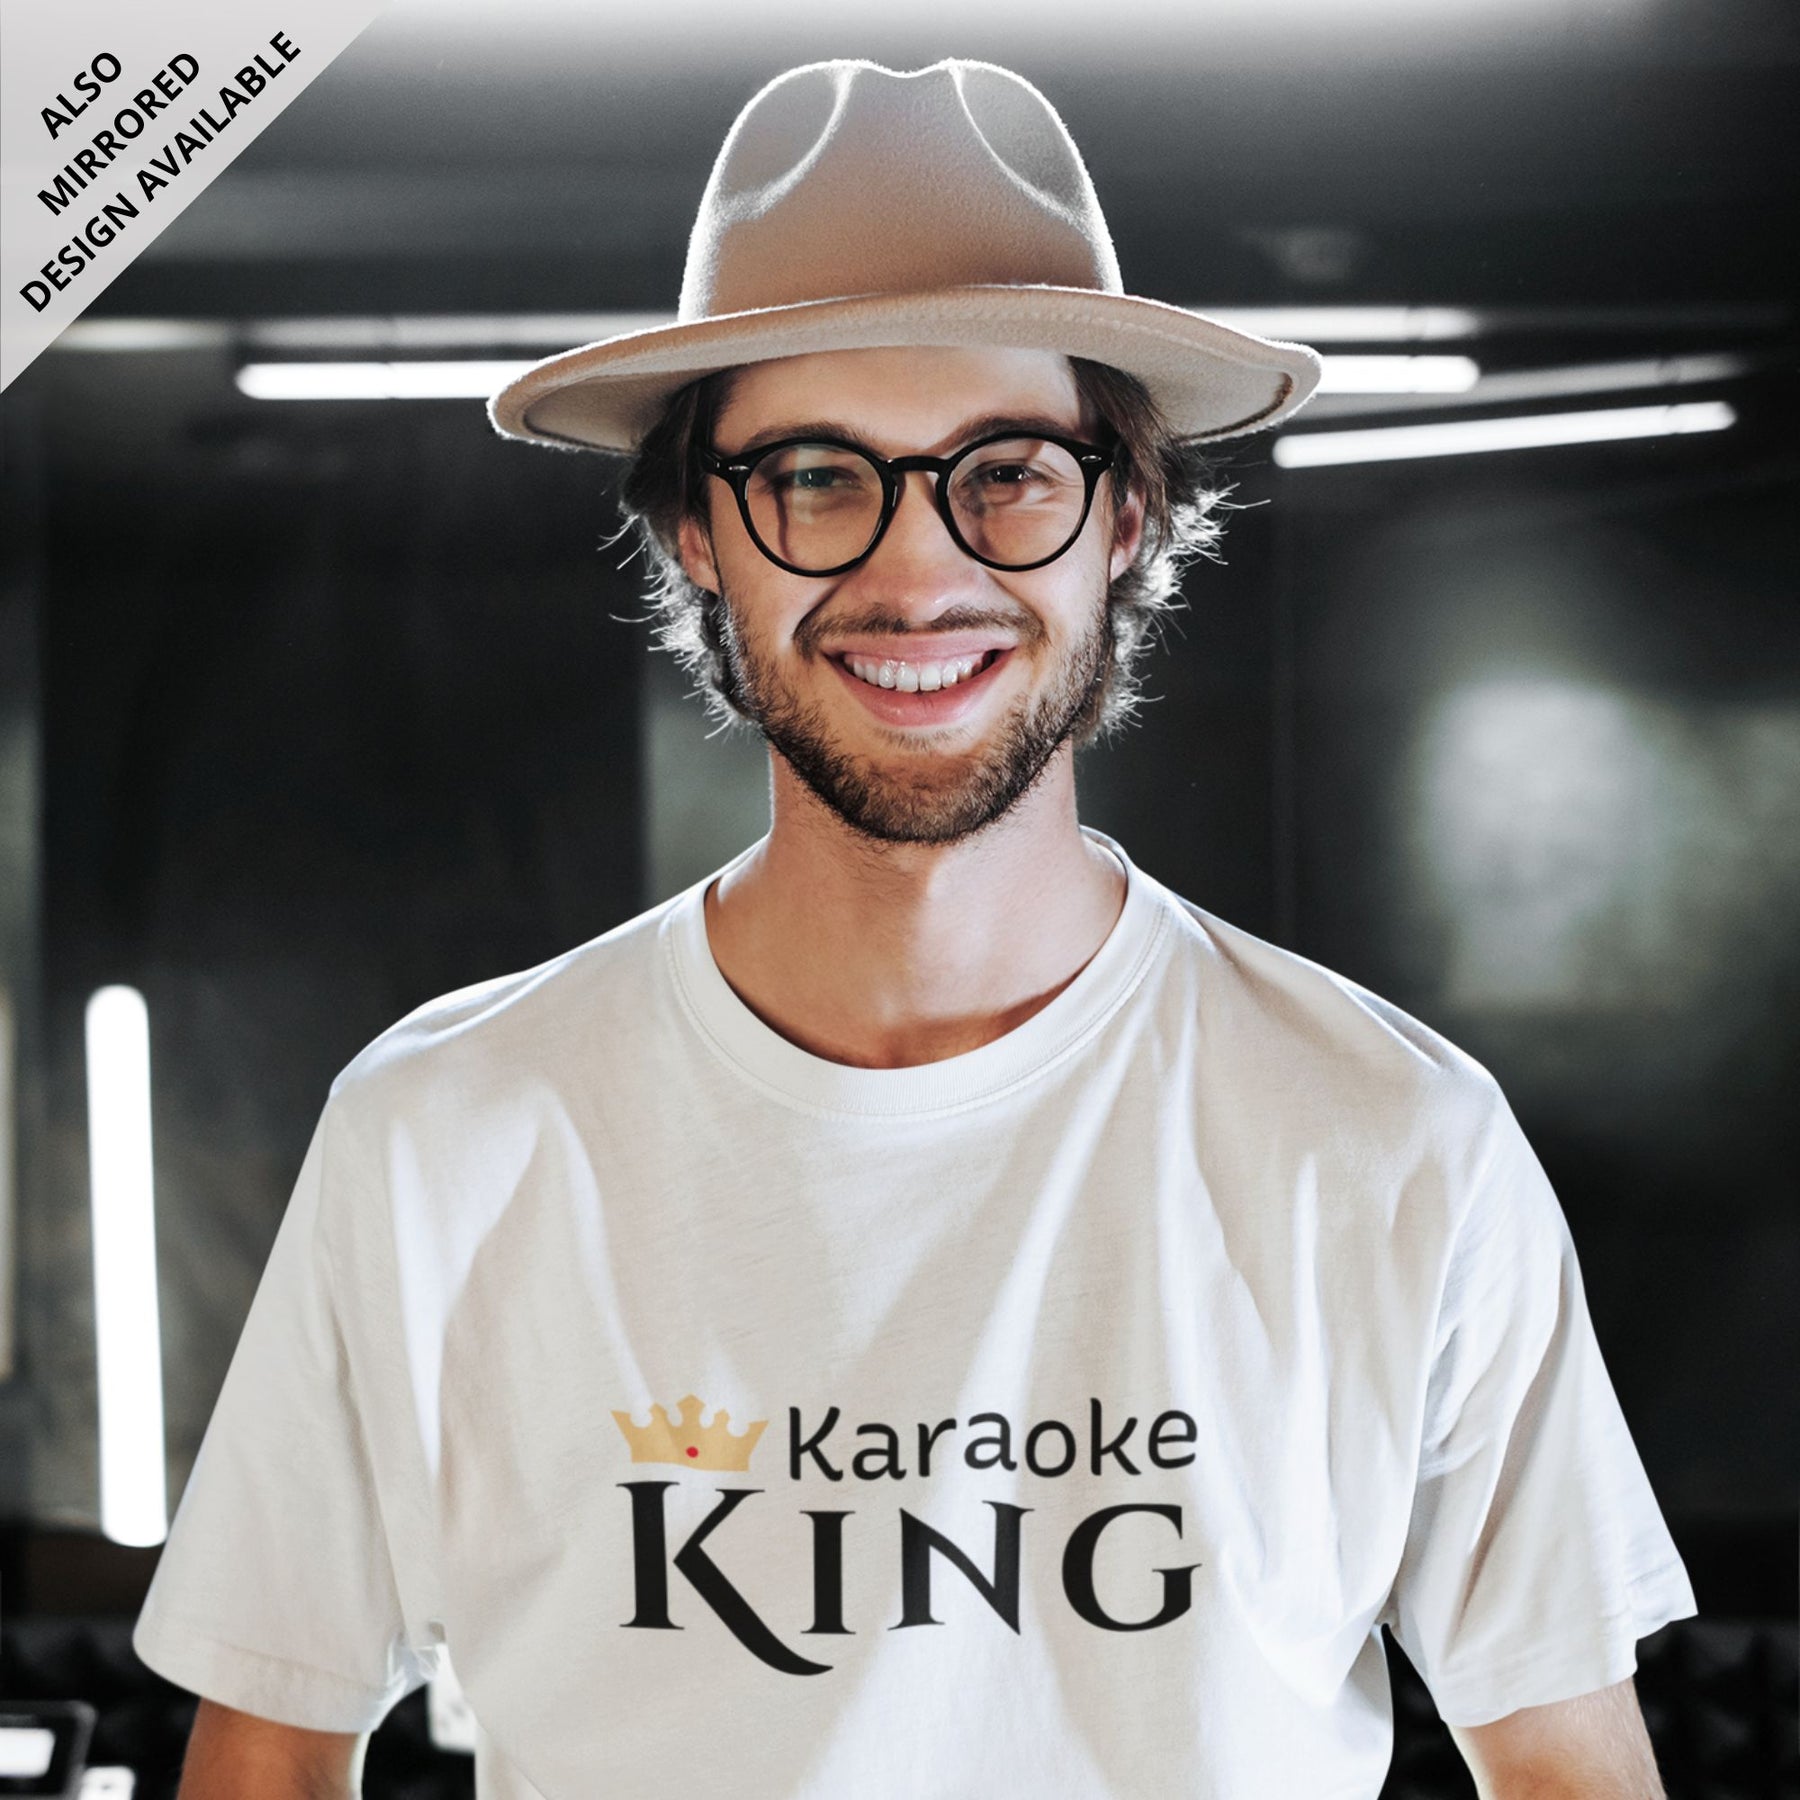 Karaoke-king-white-printed-round-neck-t-shirt-gogirgit-com